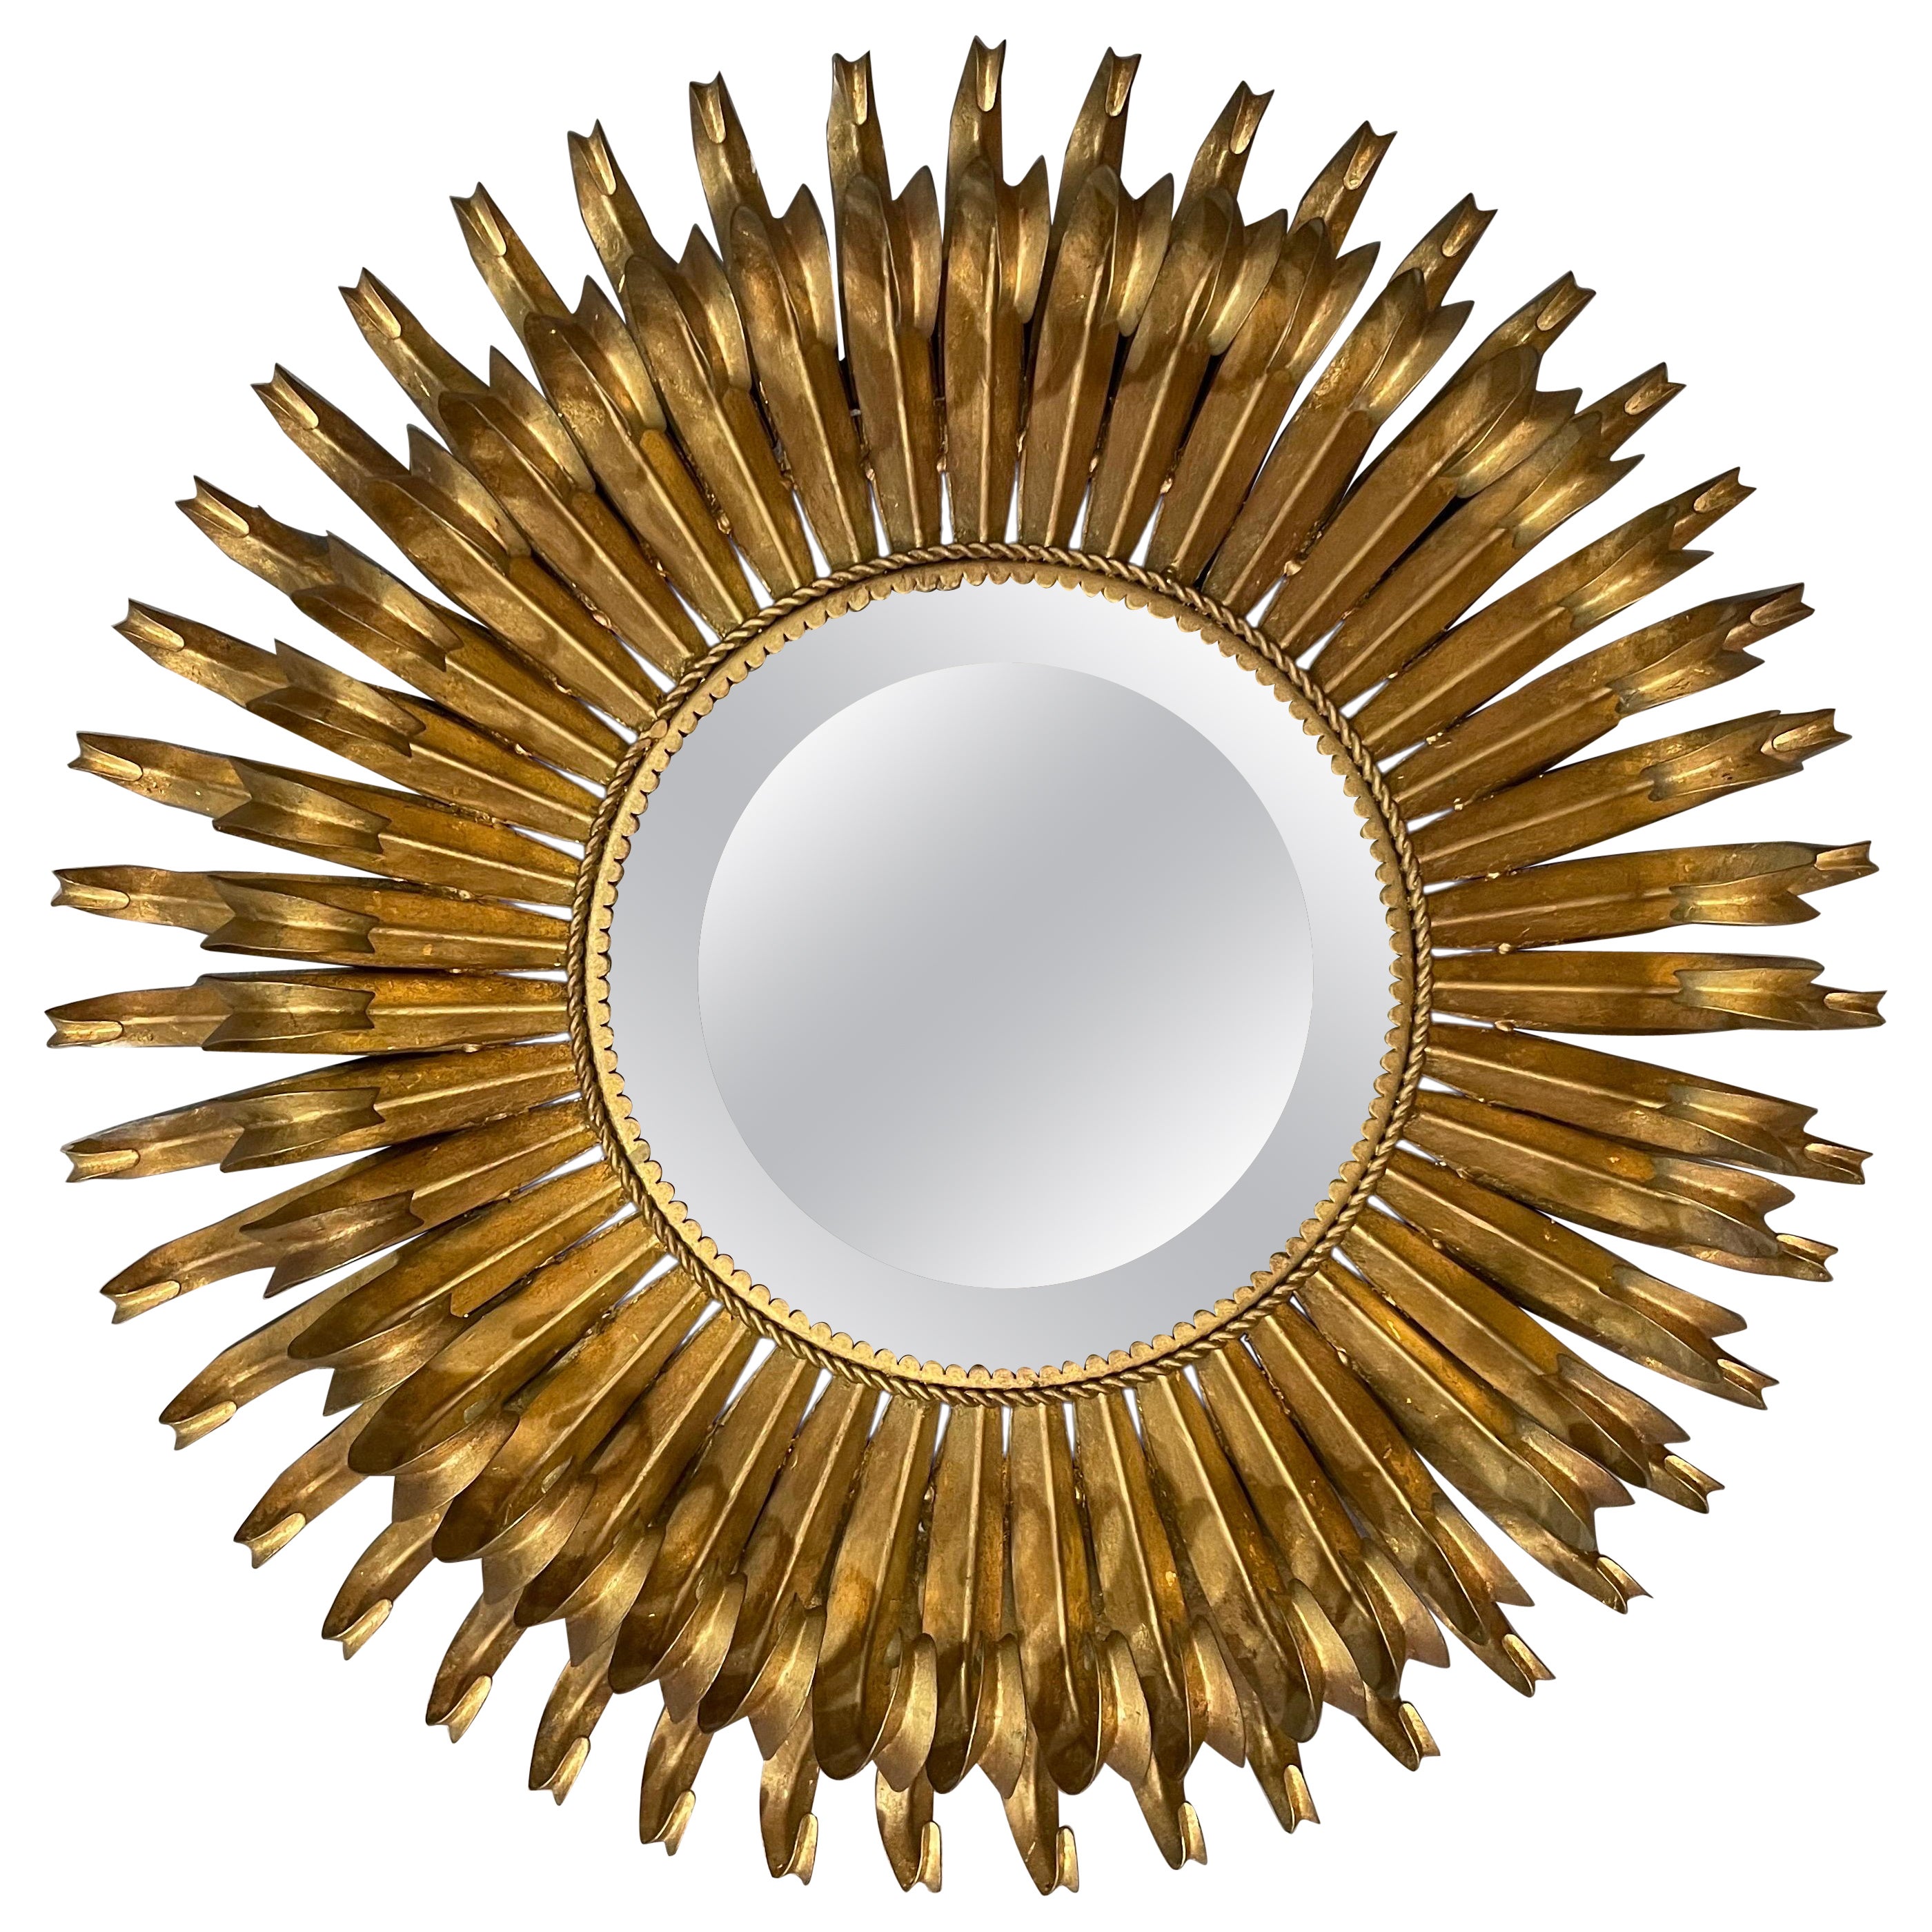 Vintage metal gold Eyelash mirror